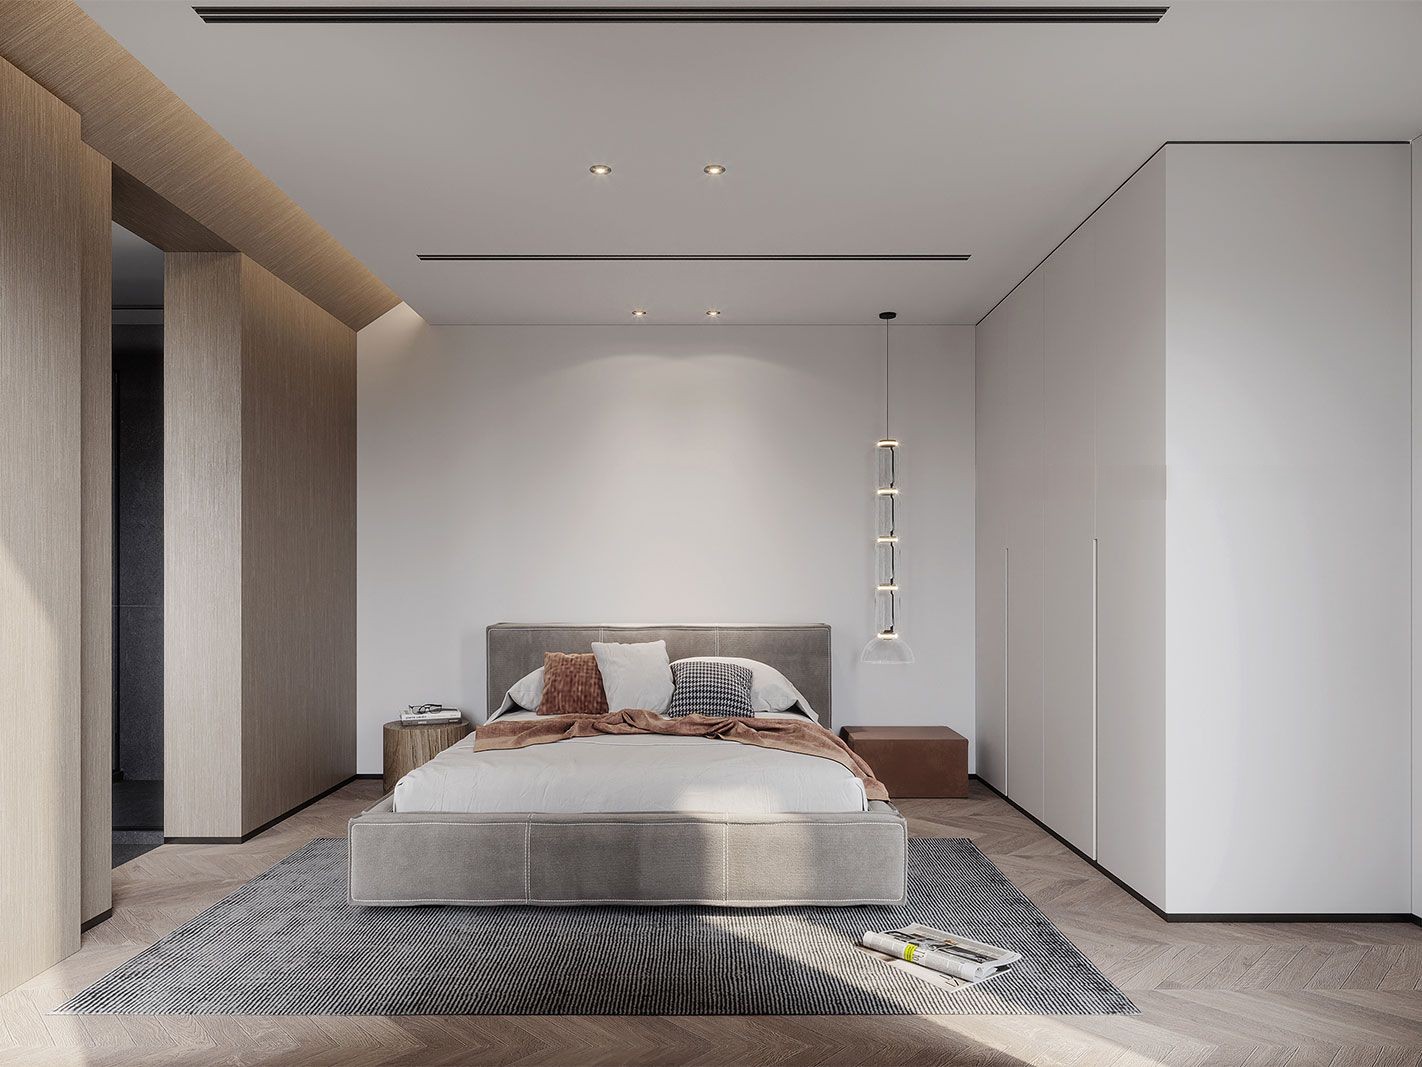 嘉定区莱茵半岛220平现代极简风格独栋别墅卧室装修效果图